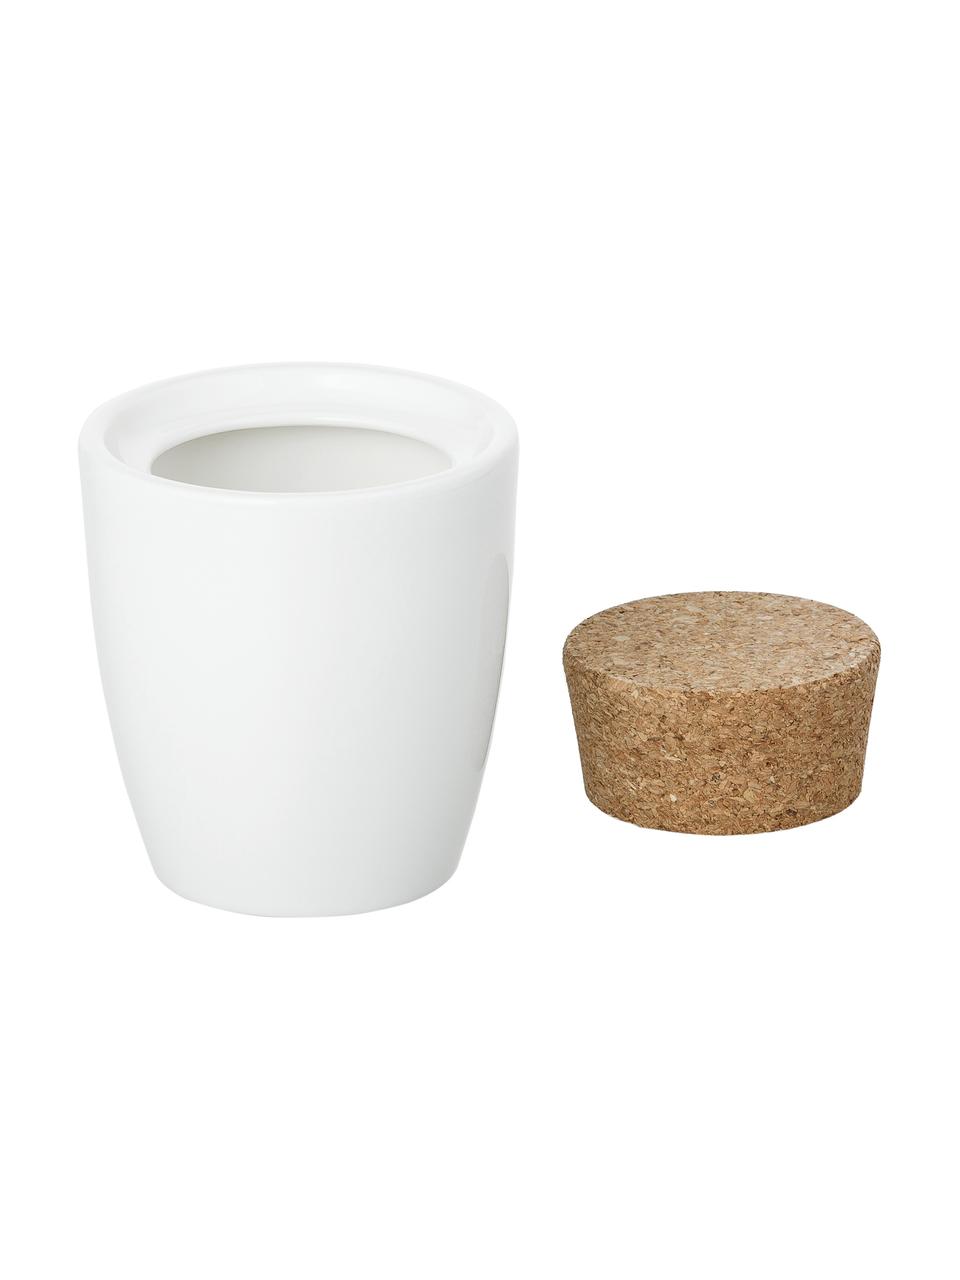 Sucrier en porcelaine avec bouchon Artesano Original, Porcelaine, liège, Blanc, 300 ml